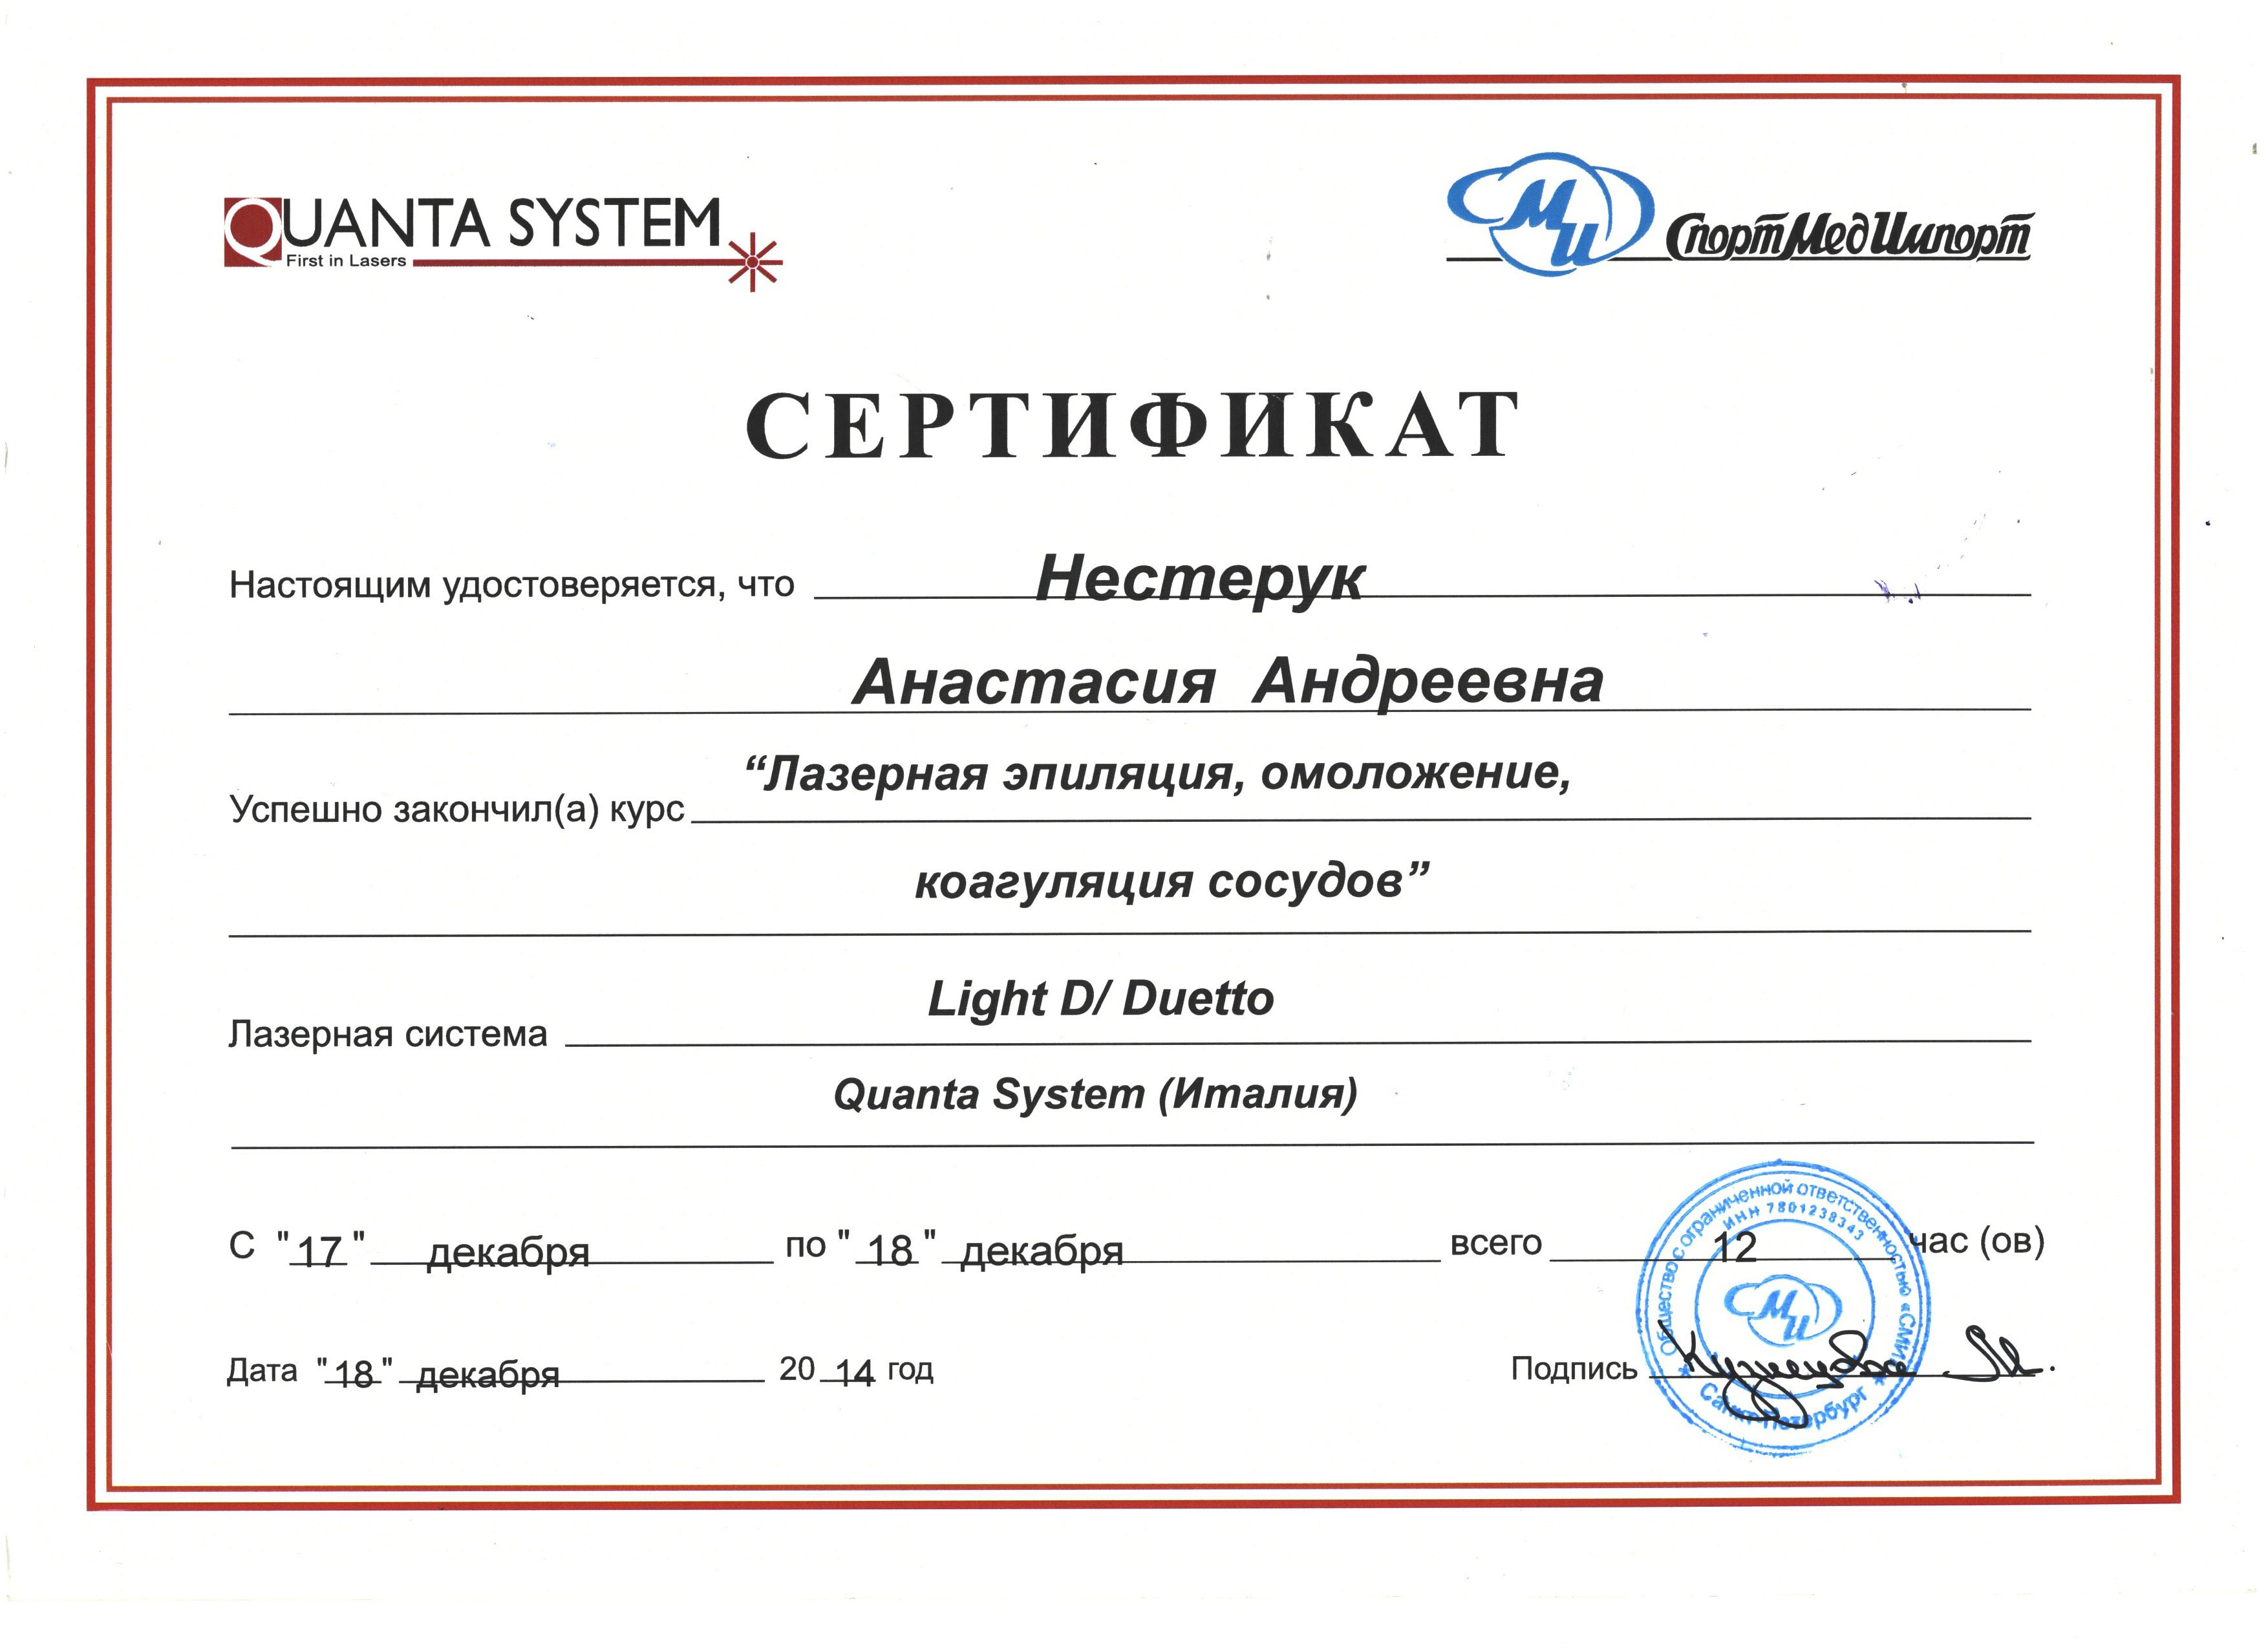 Сертификат — Курс «Лазерная эпиляция, омоложение, коагуляция сосудов». Яблочко Анастасия Андреевна